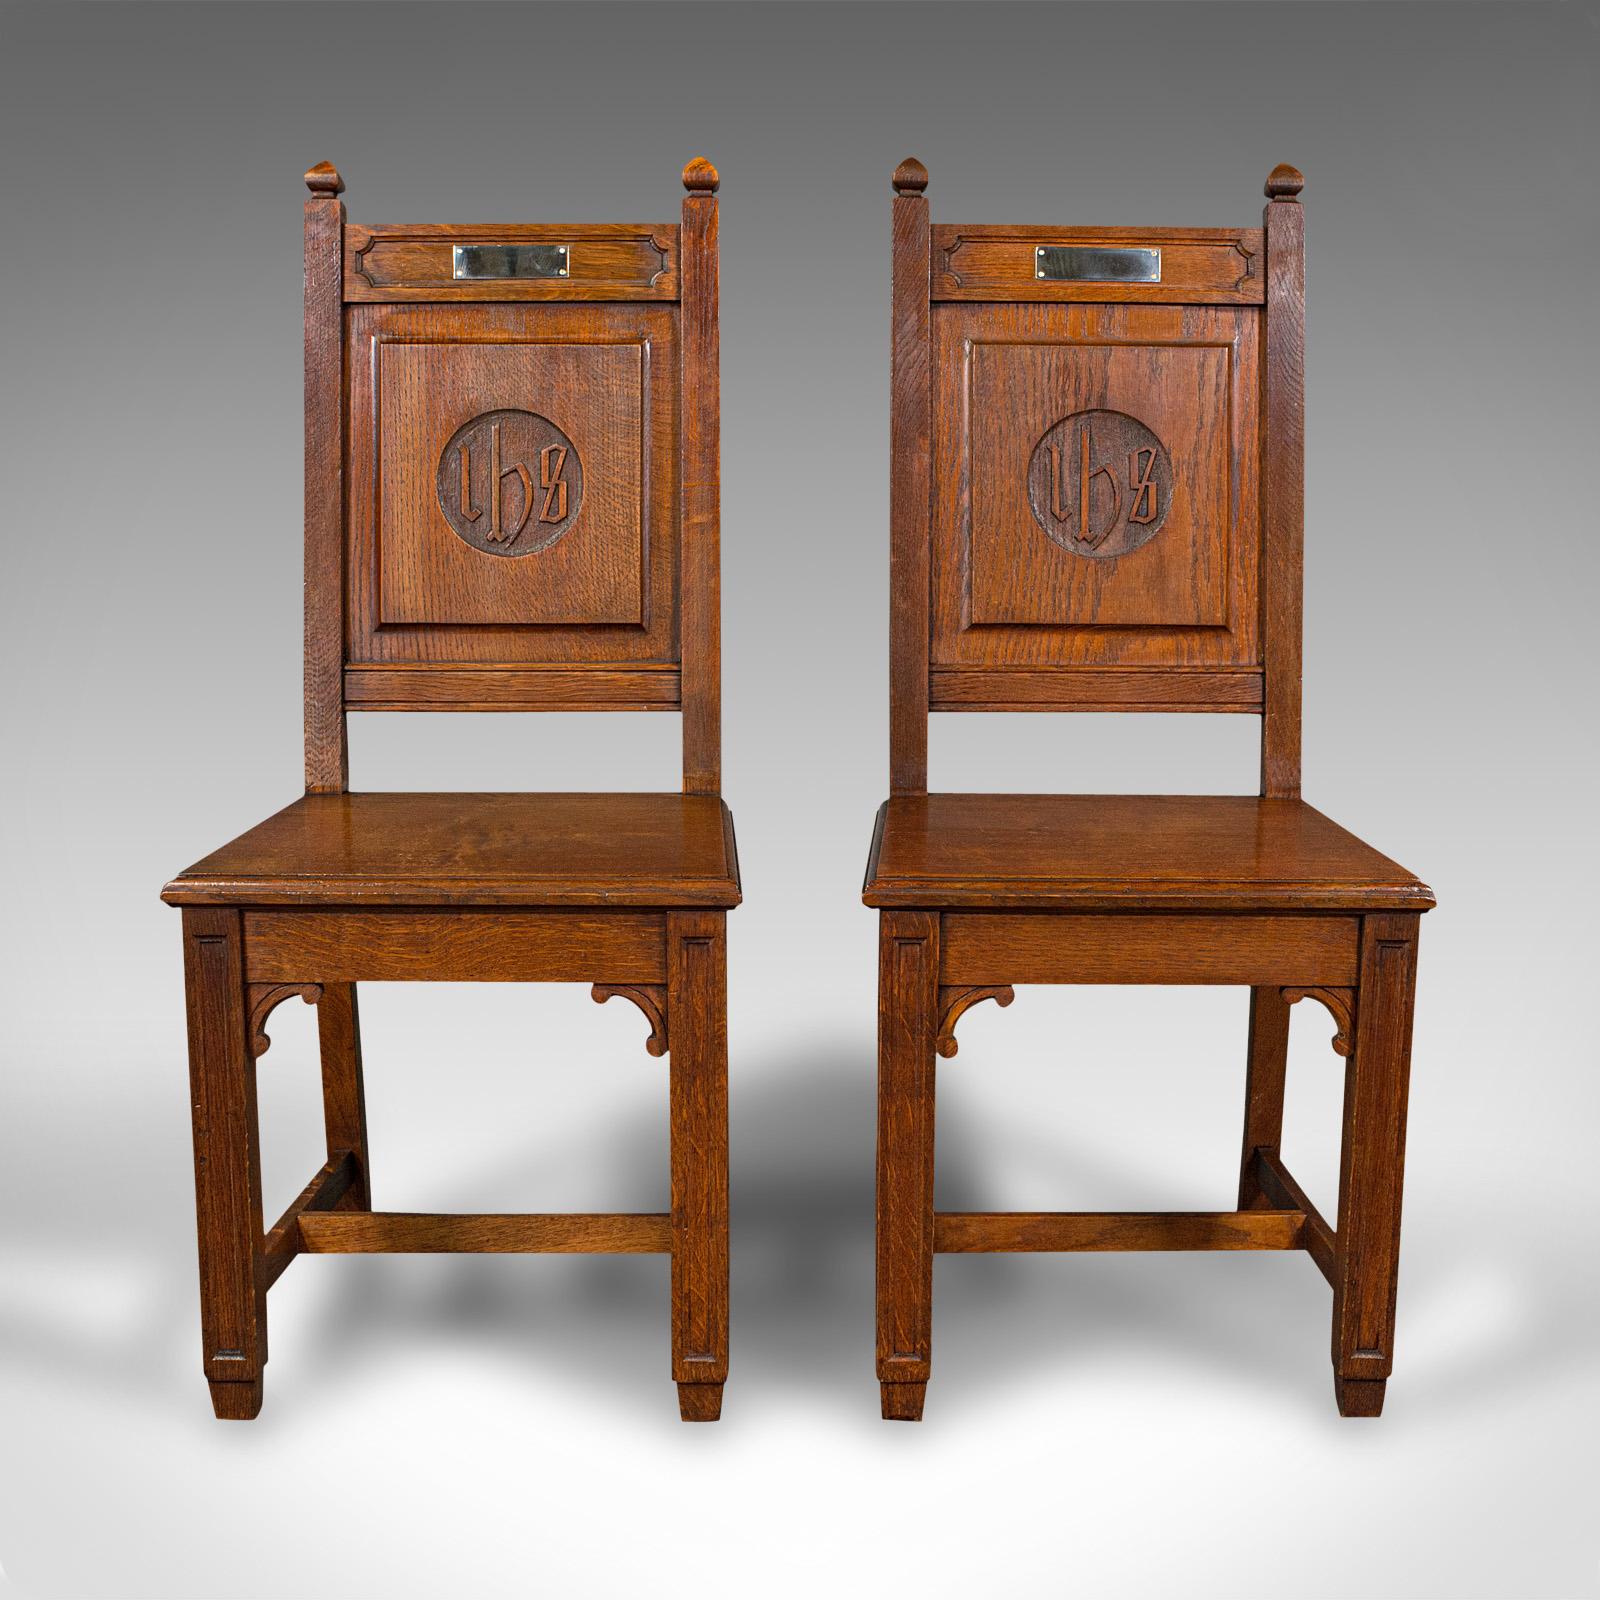 Dies ist ein Paar antiker Dielenstühle. Ein englischer Beistellstuhl aus Eiche mit kirchlichem Geschmack aus der späten viktorianischen Zeit um 1900.

Robuste und beeindruckend kräftige Stühle mit schöner Maserung.
Mit einer wünschenswerten